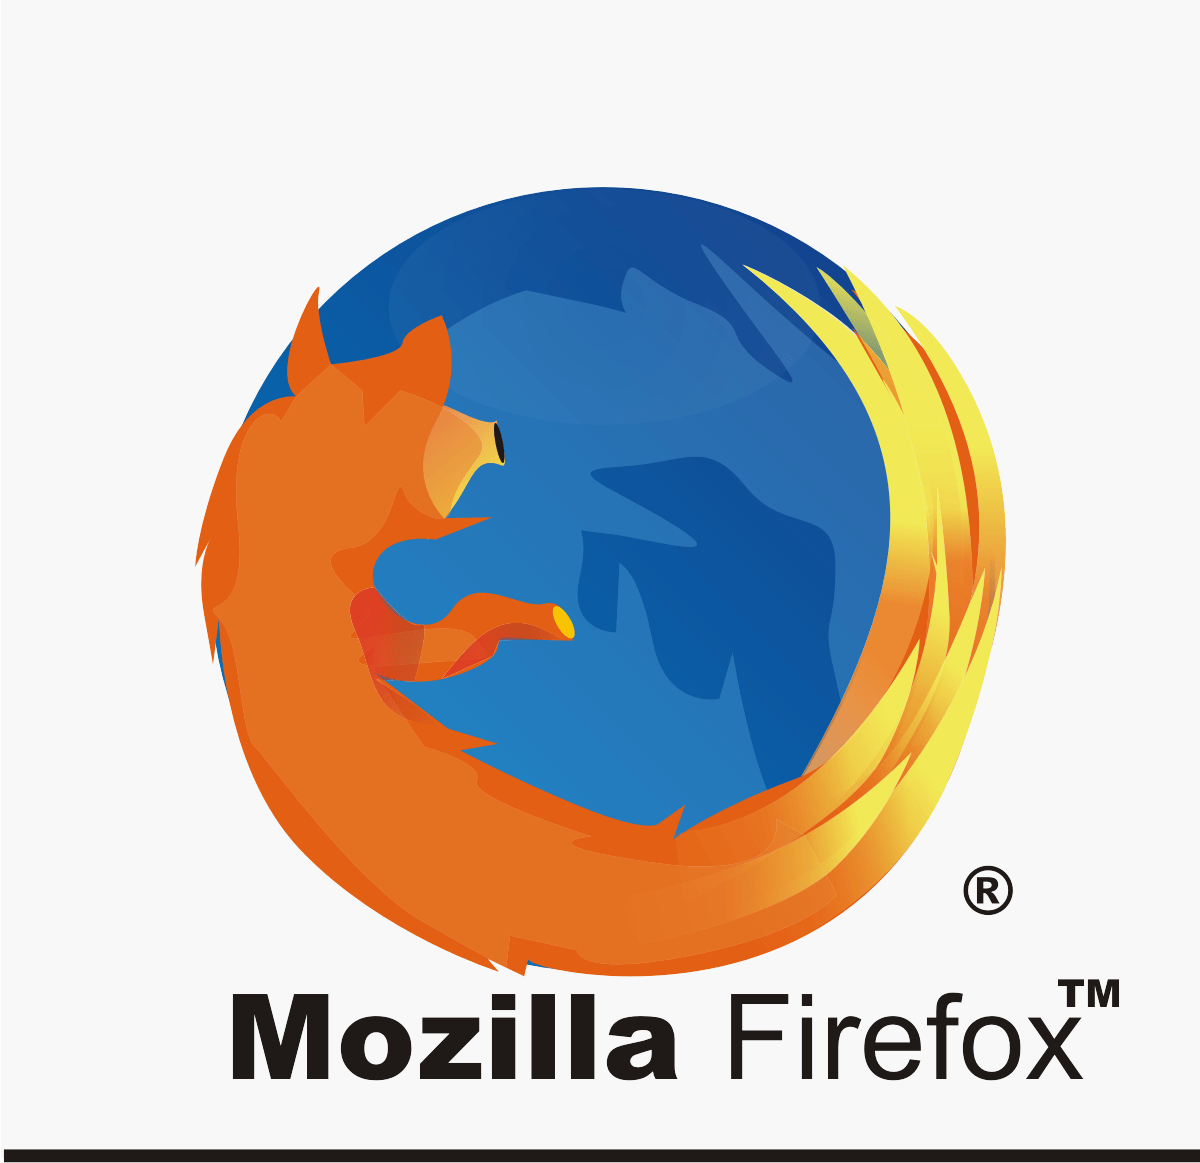 Mozzila Firefox Logo - My TUTORIAL Arena: LOGOGRAPHY: DESIGN FIREFOX LOGO WITH CORELDRAW